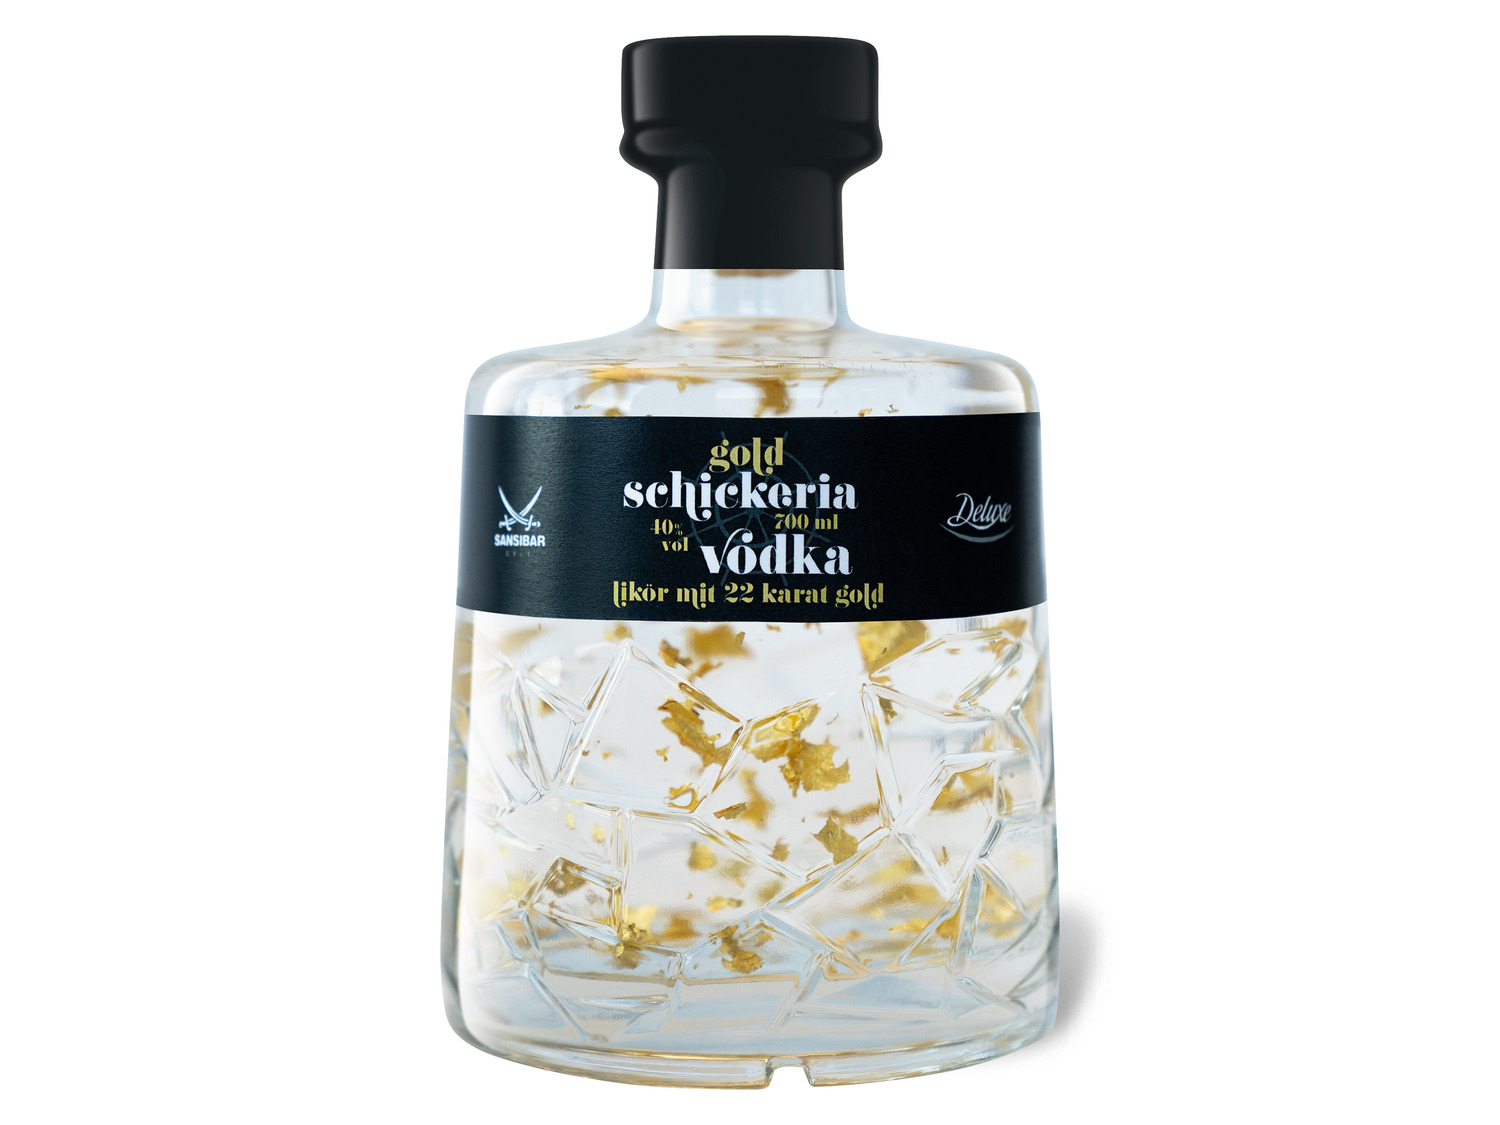 Sansibar Deluxe Vodkalikör Schickeria mit Goldstückche…